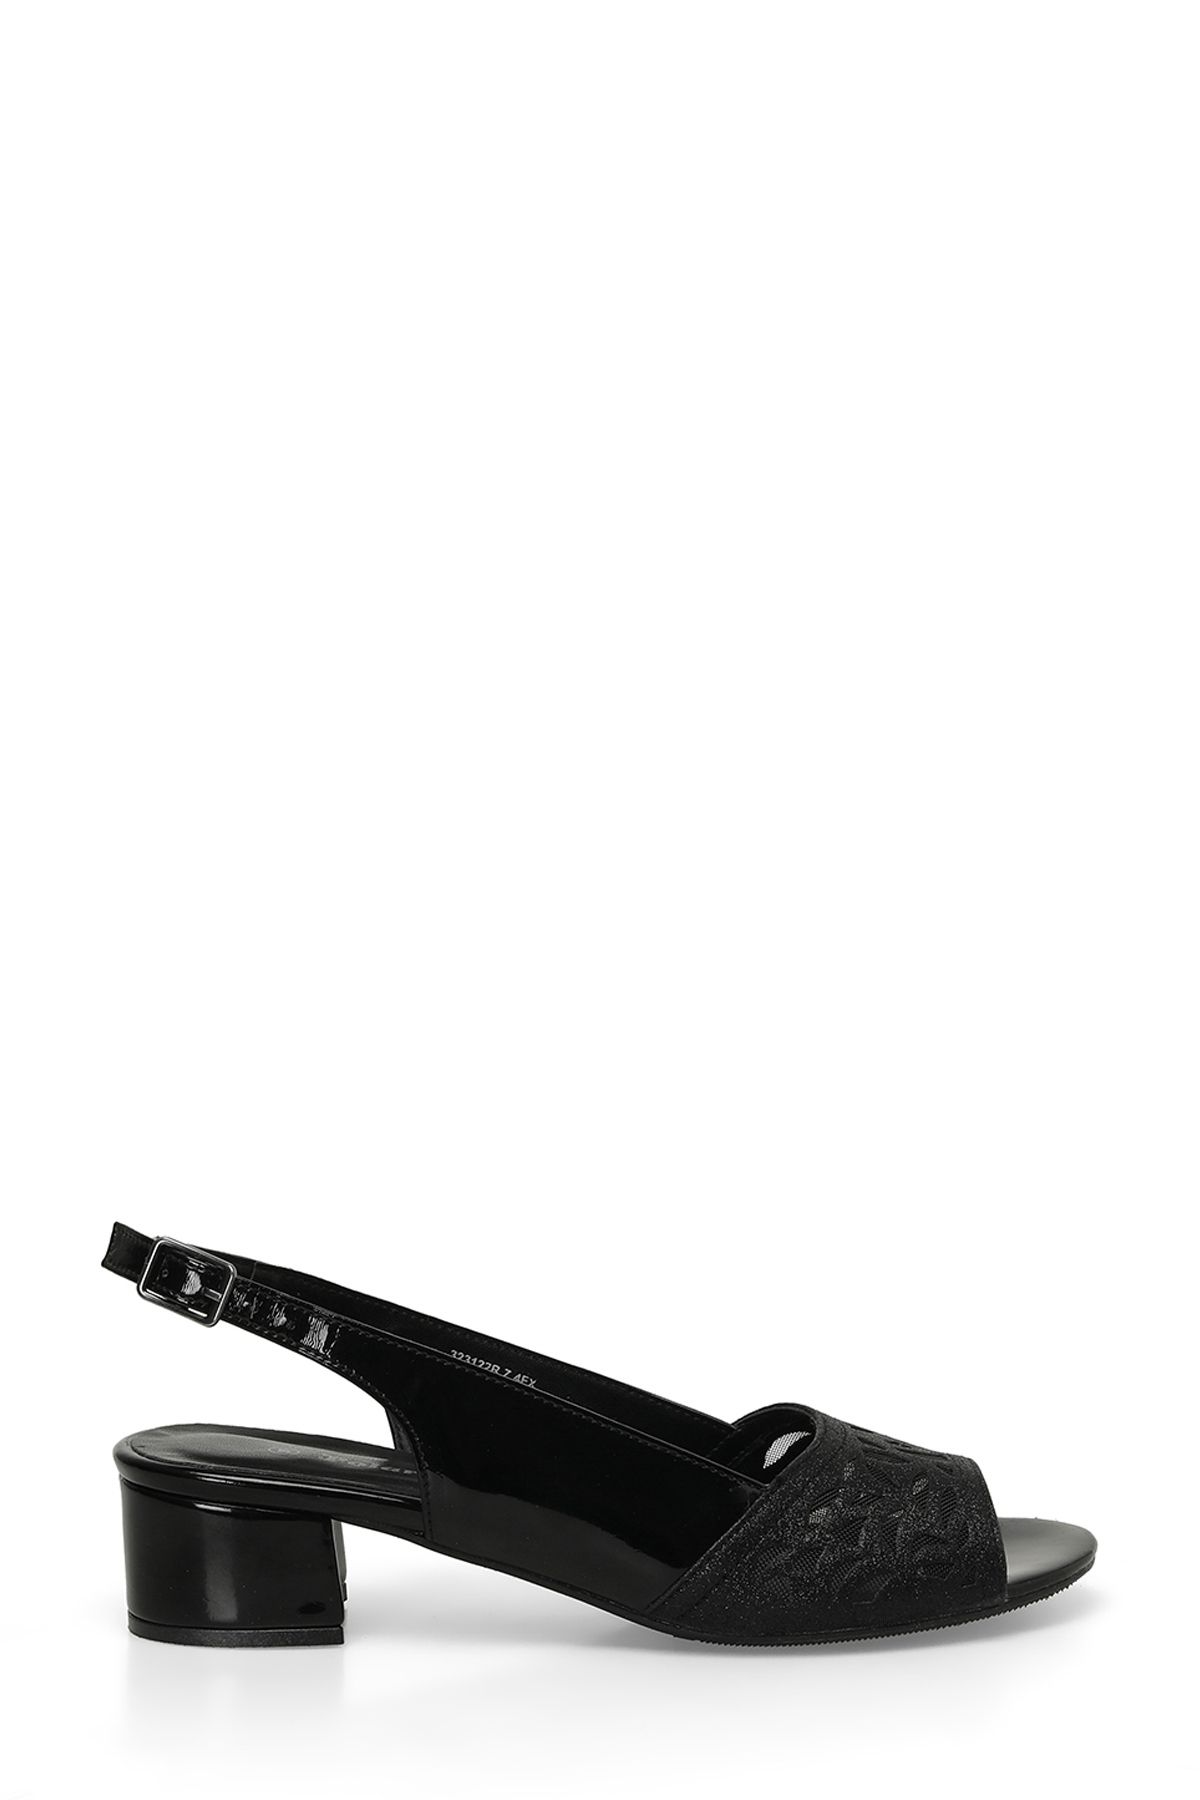 Polaris 323122R.Z 4FX Siyah Kadın Topuklu Sandalet